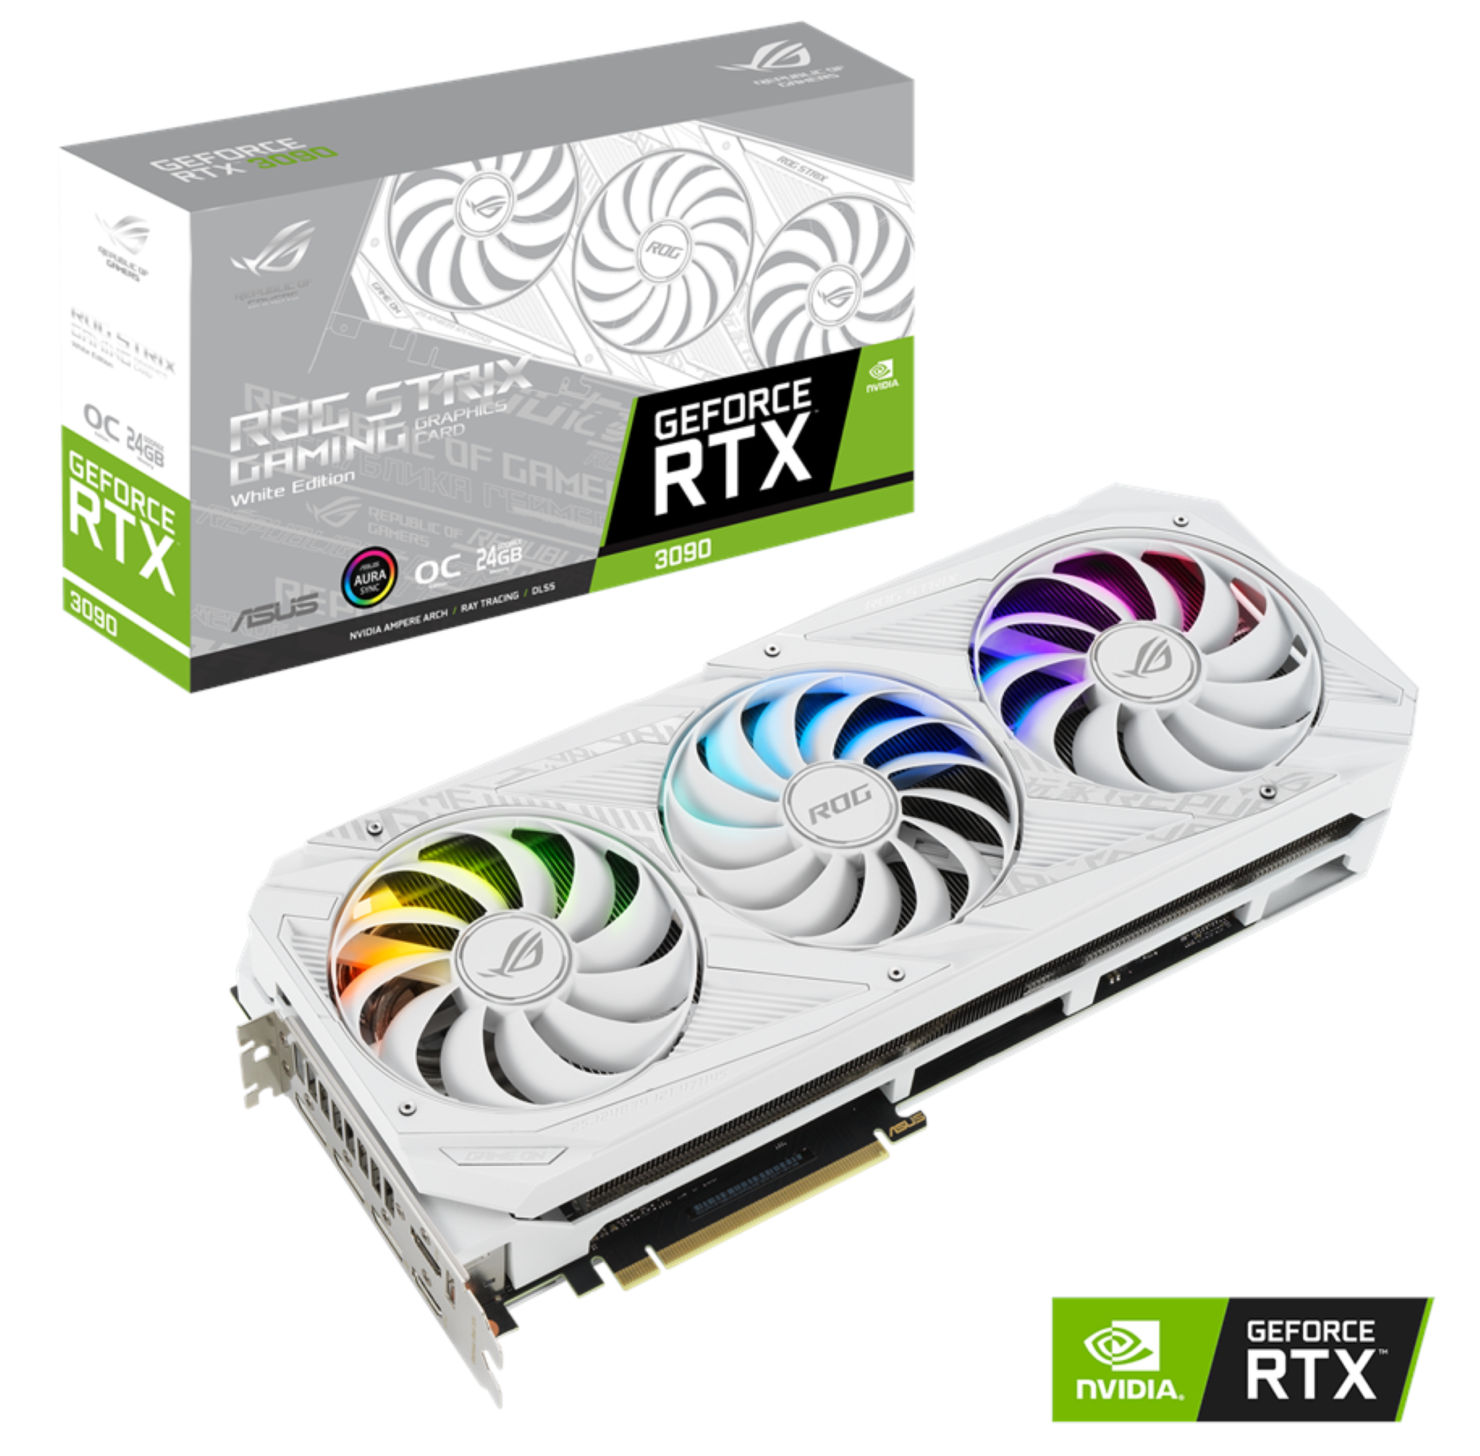 GeForce RTX 3090 ROG STRIX White